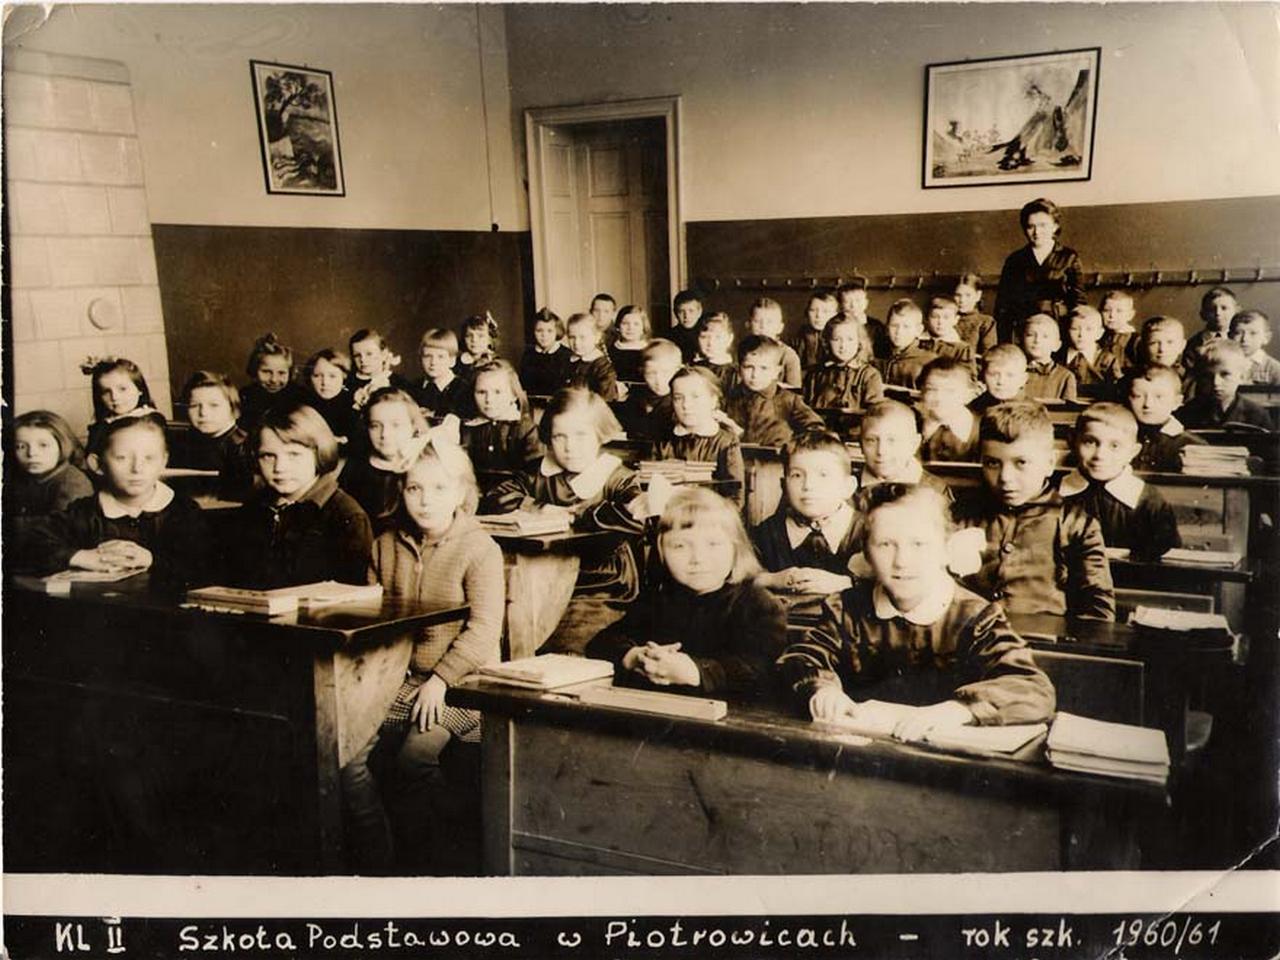 306. Fotografie – Uczniowie Szkoły Podstawowej w Piotrowicach Świdnickich, 1960/61